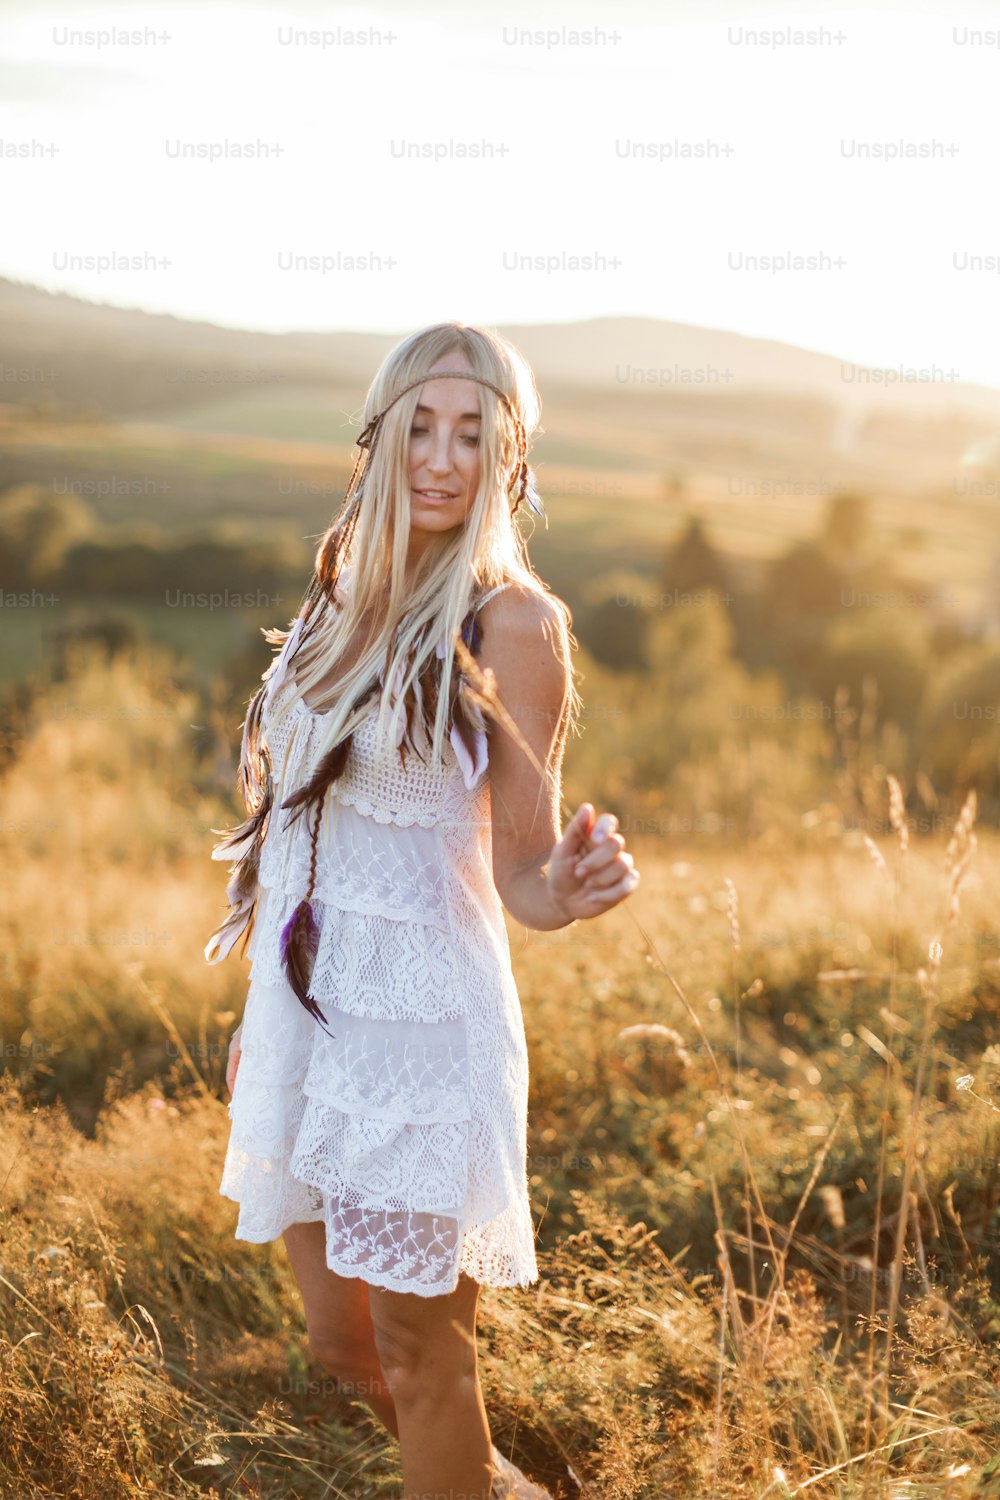 Mujer boho rubia atractiva feliz en vestido blanco y accesorios de plumas en el pelo en el campo de verano al aire libre, puesta del sol. Moda boho, estilo hippie.